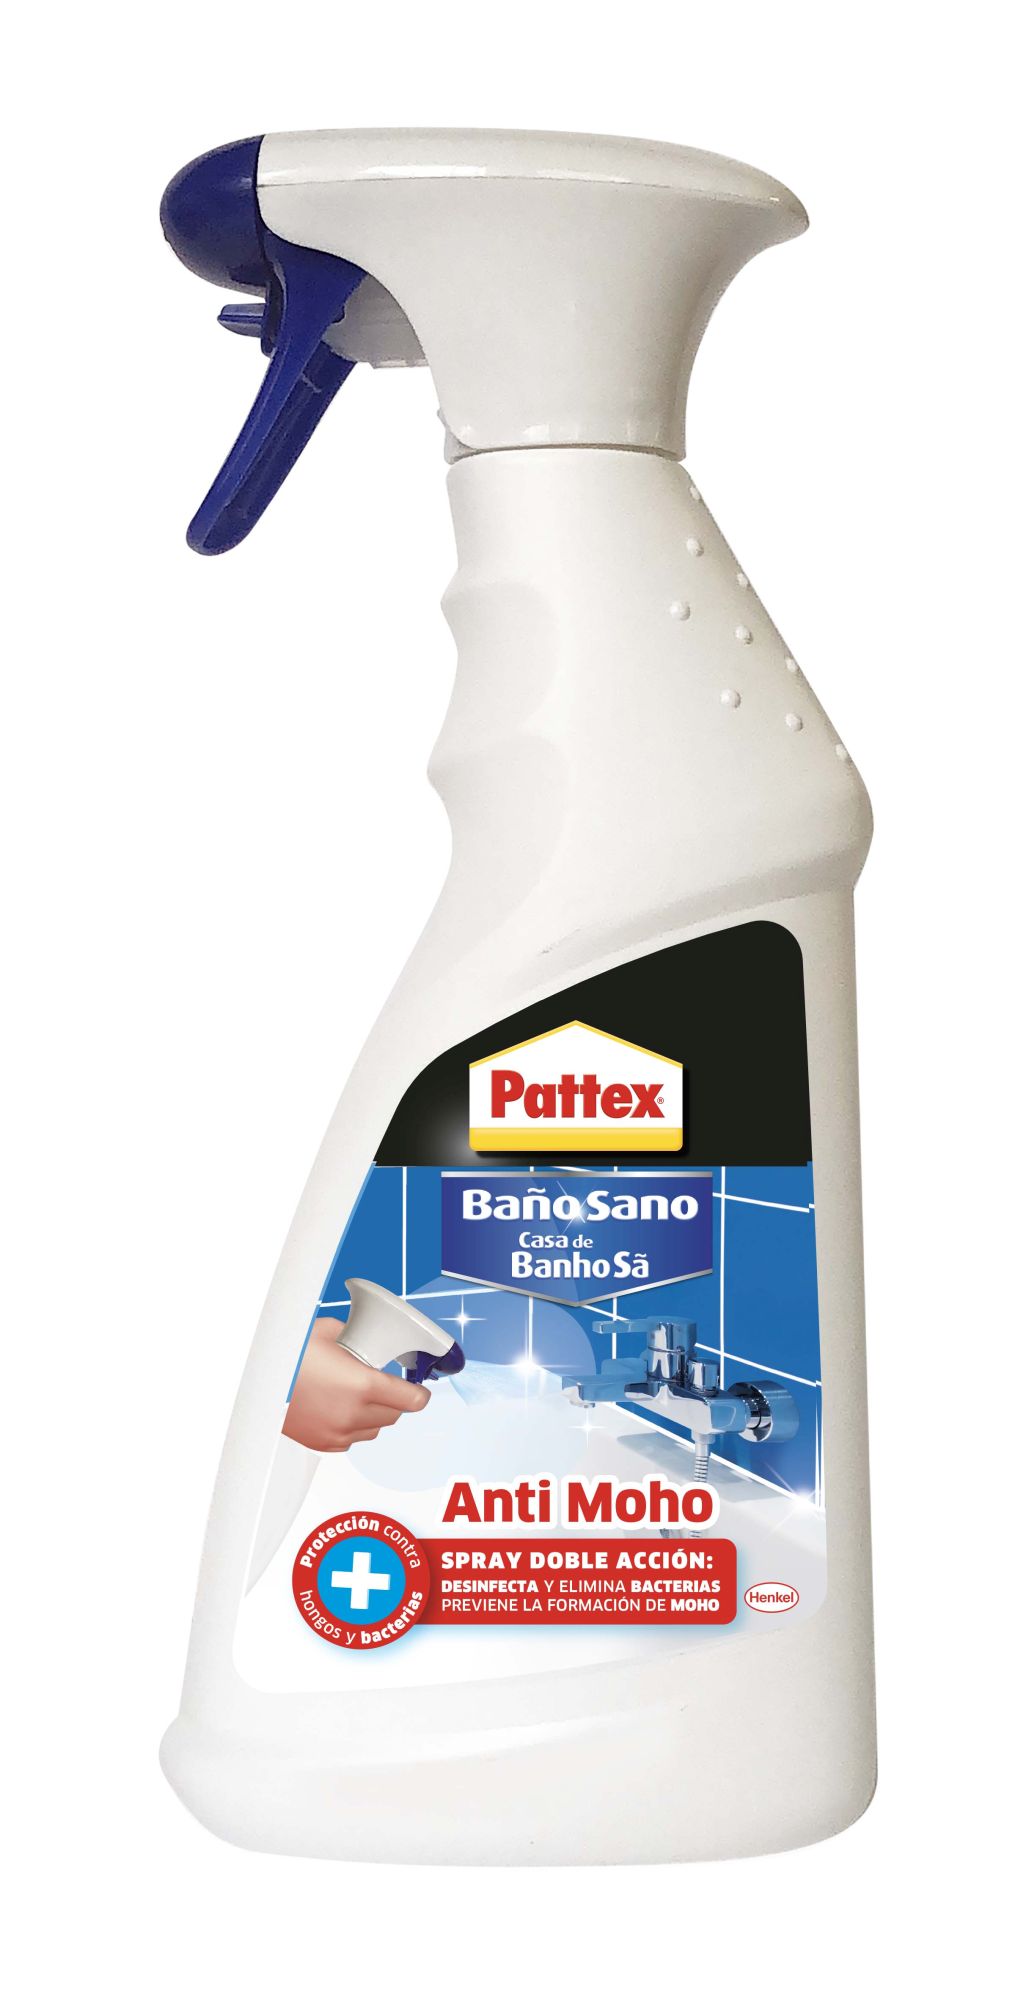 Lote Exclusivo de Spray Antimoho BAUFIX y Pintura Correctora Blanca -  Solución Completa contra el Moho - España, Outlet - Plataforma mayorista